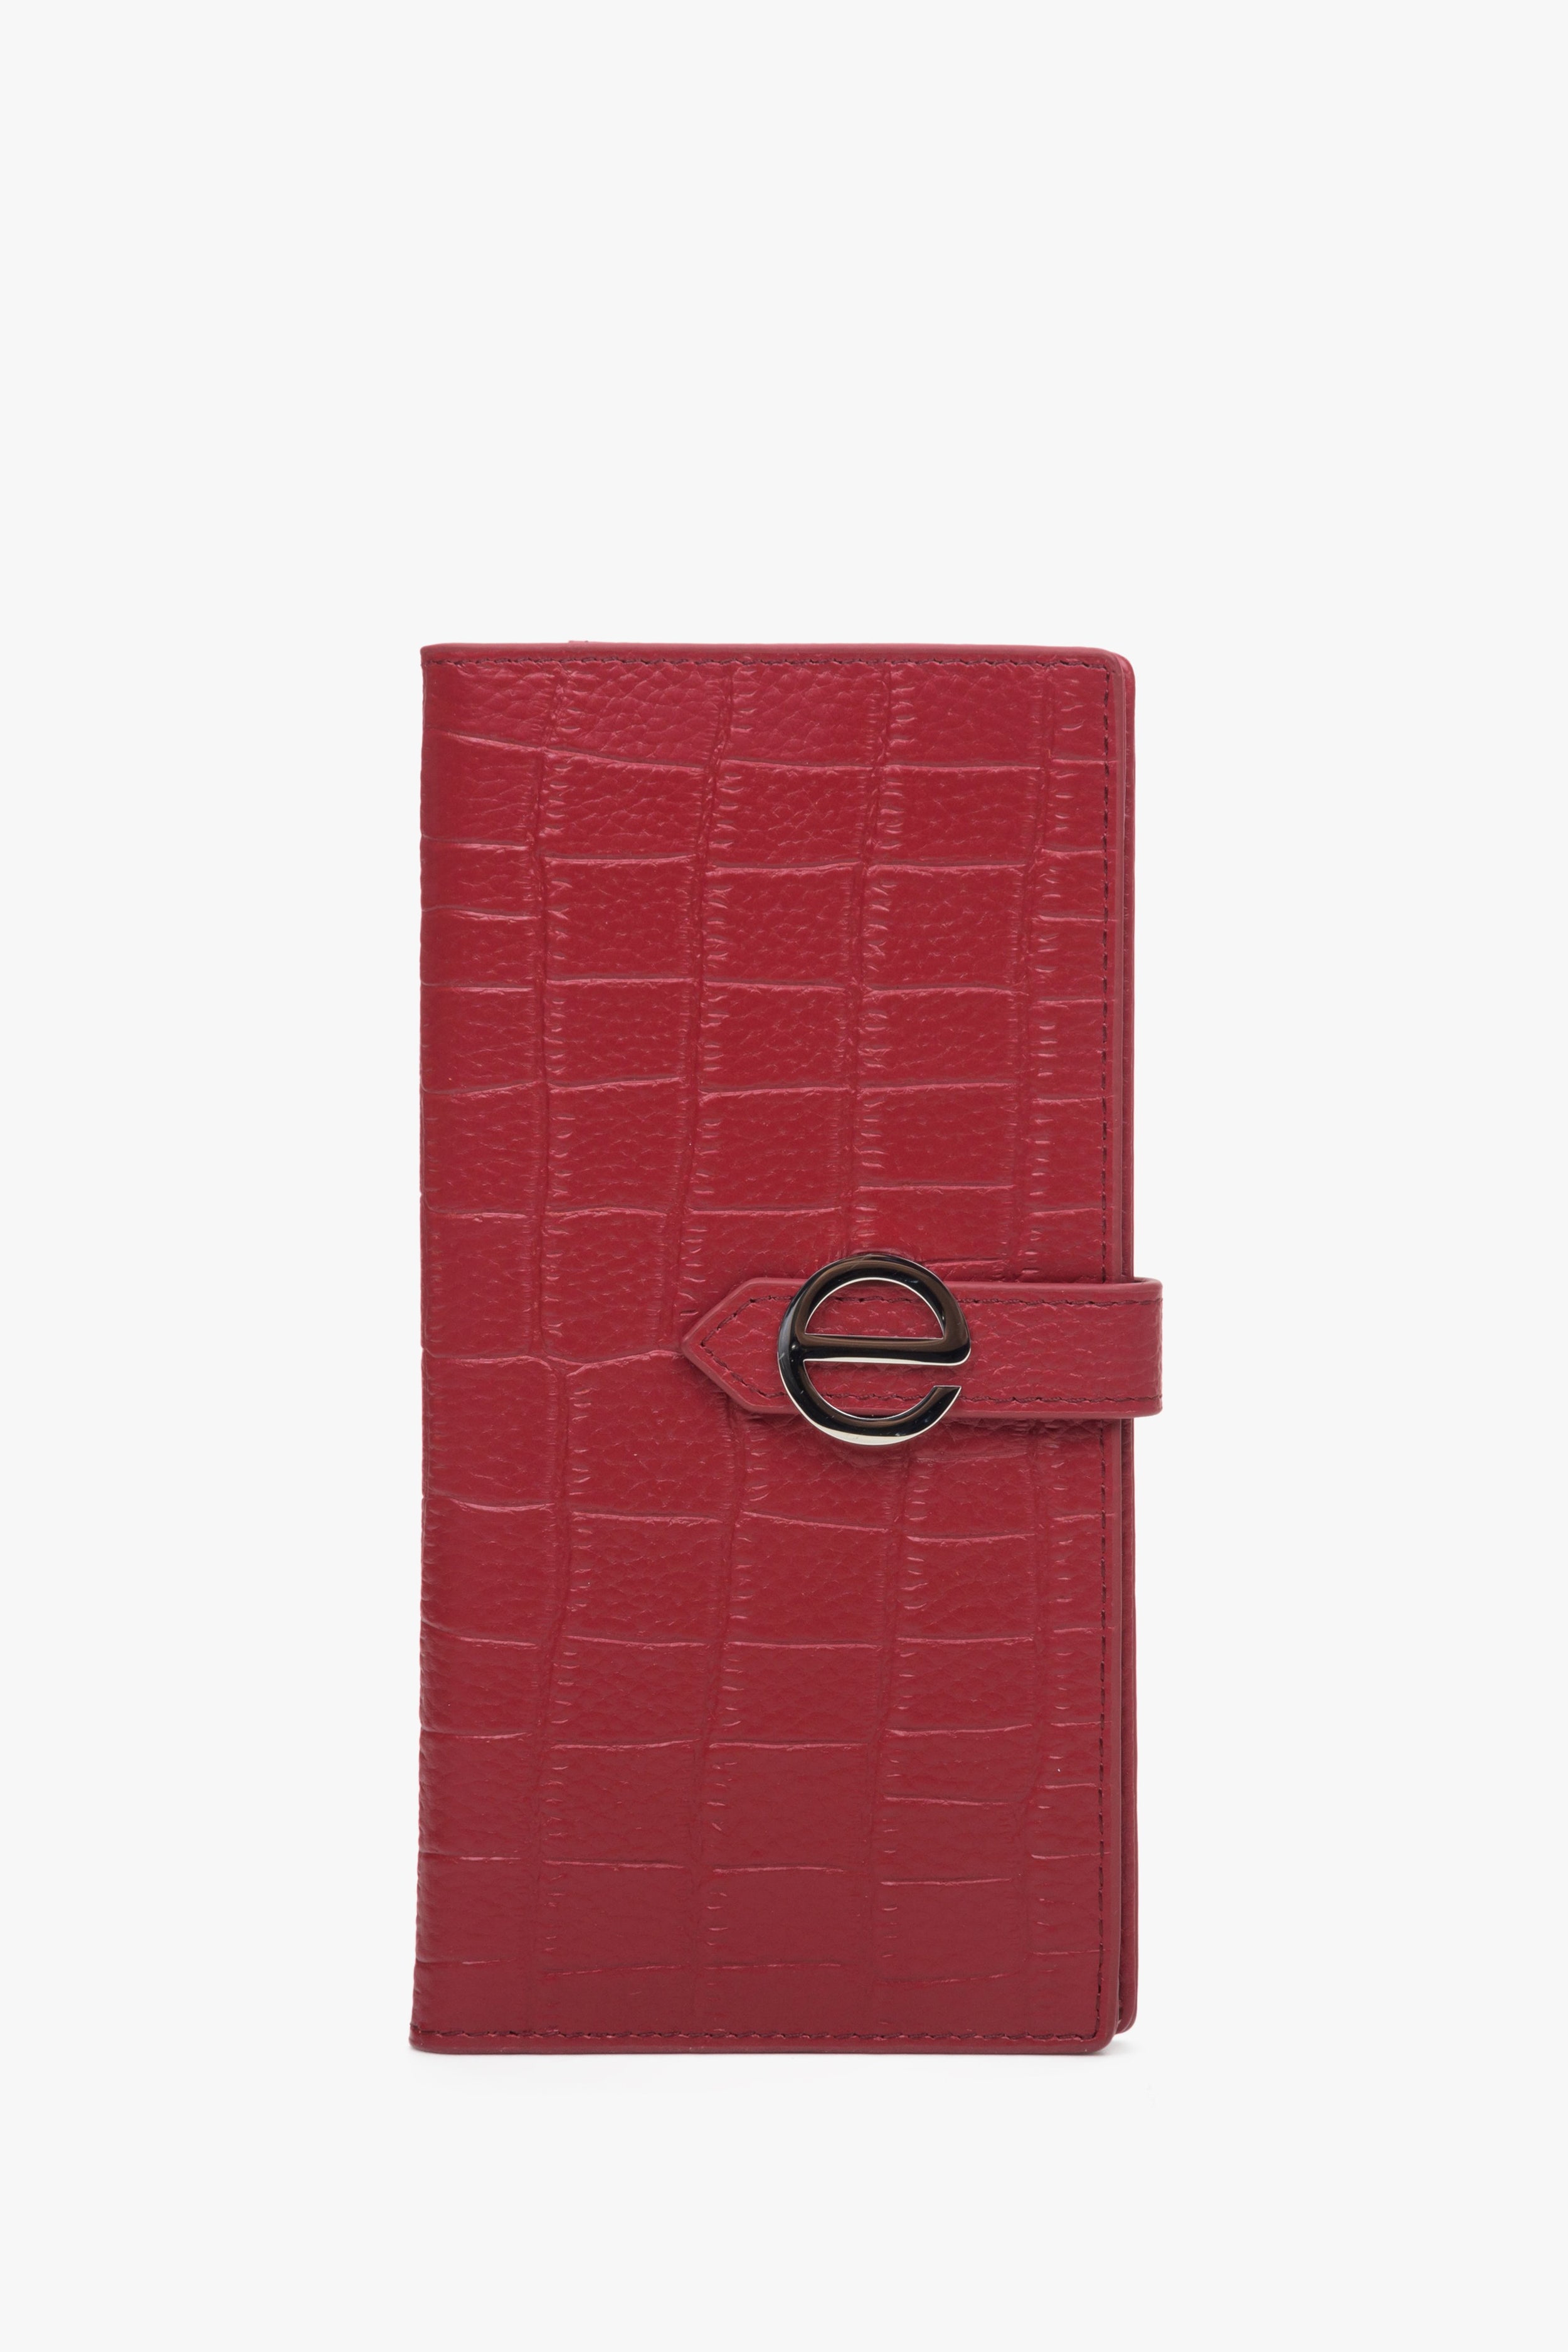 Estro: Duży czerwony portfel damski z tłoczonej skóry naturalnej ze złotymi detalami